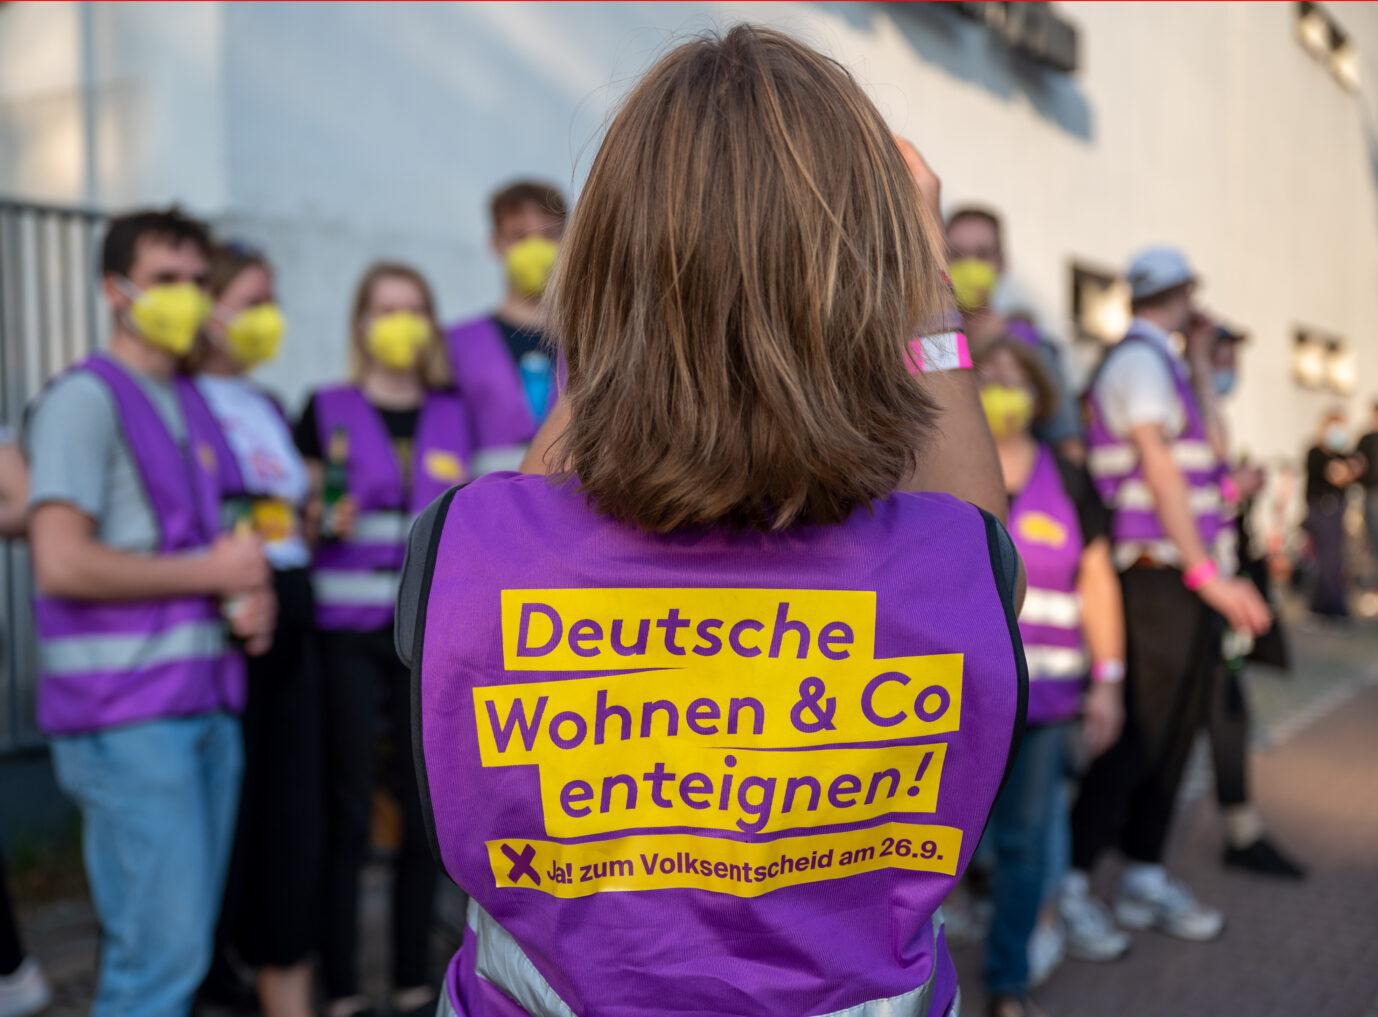 Anhänger der Initiative "Deutsche Wohnen enteignen" feiern ihren Erfolg beim Volksentscheid Foto: picture alliance/dpa/dpa-Zentralbild | Monika Skolimowska